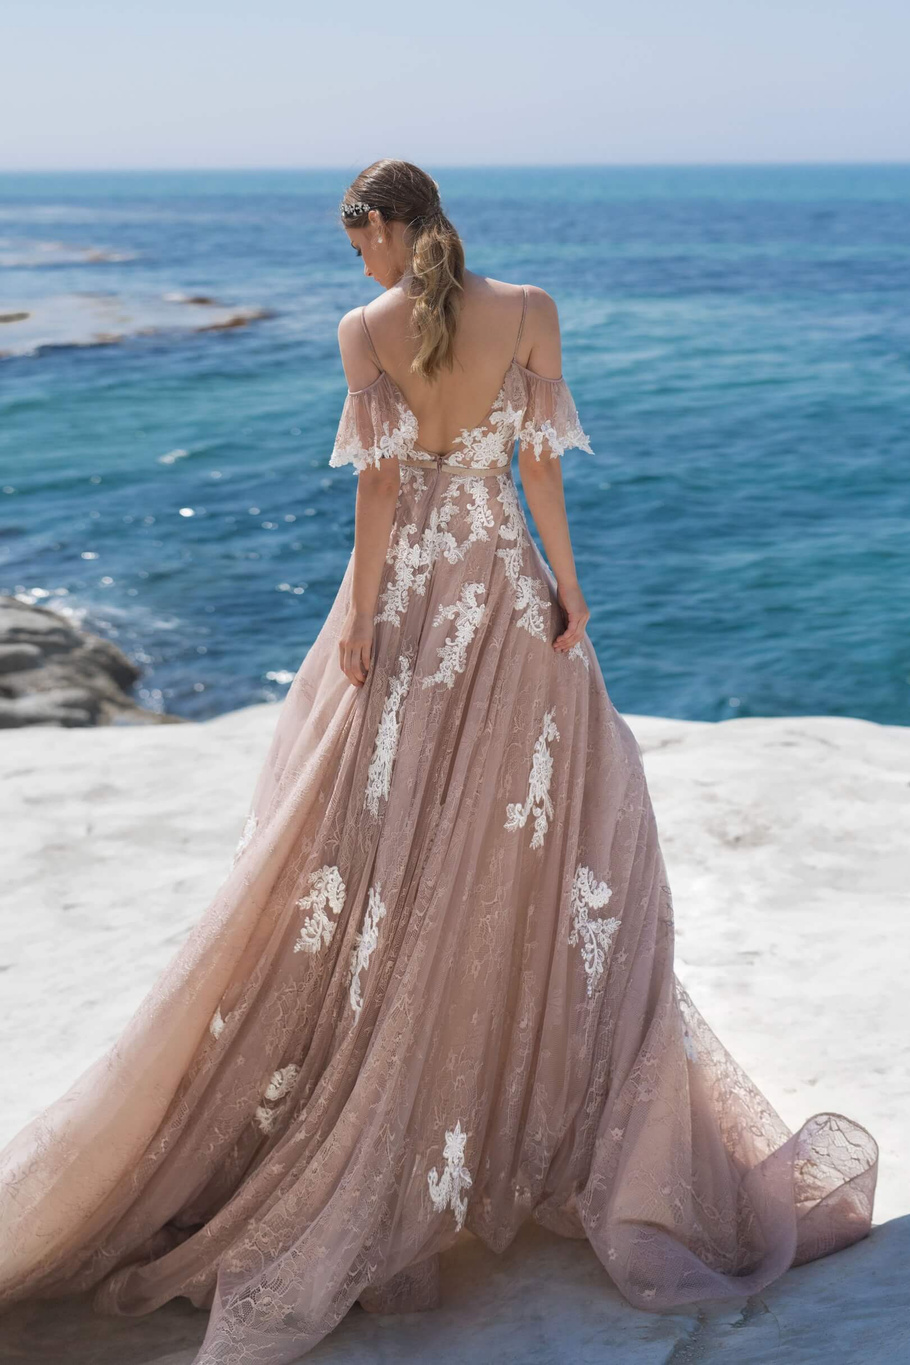 Купить свадебное платье Арт. 73026a-1 Луссано Брайдал из коллекции 2021 года в салоне «Мэри Трюфель»